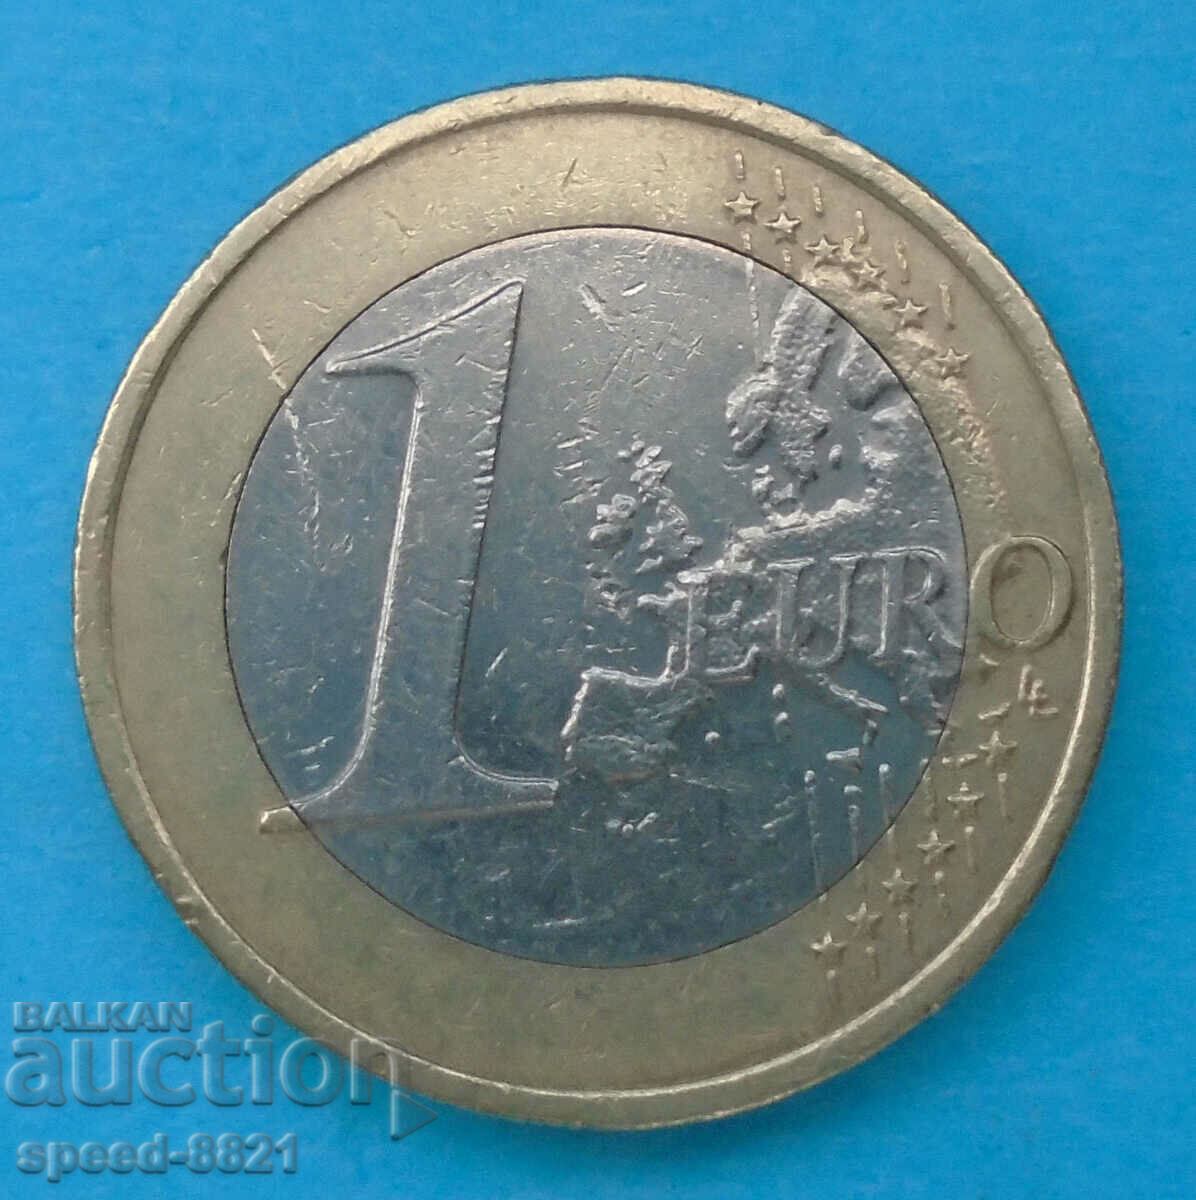 1 euro 2014 coin Latvia